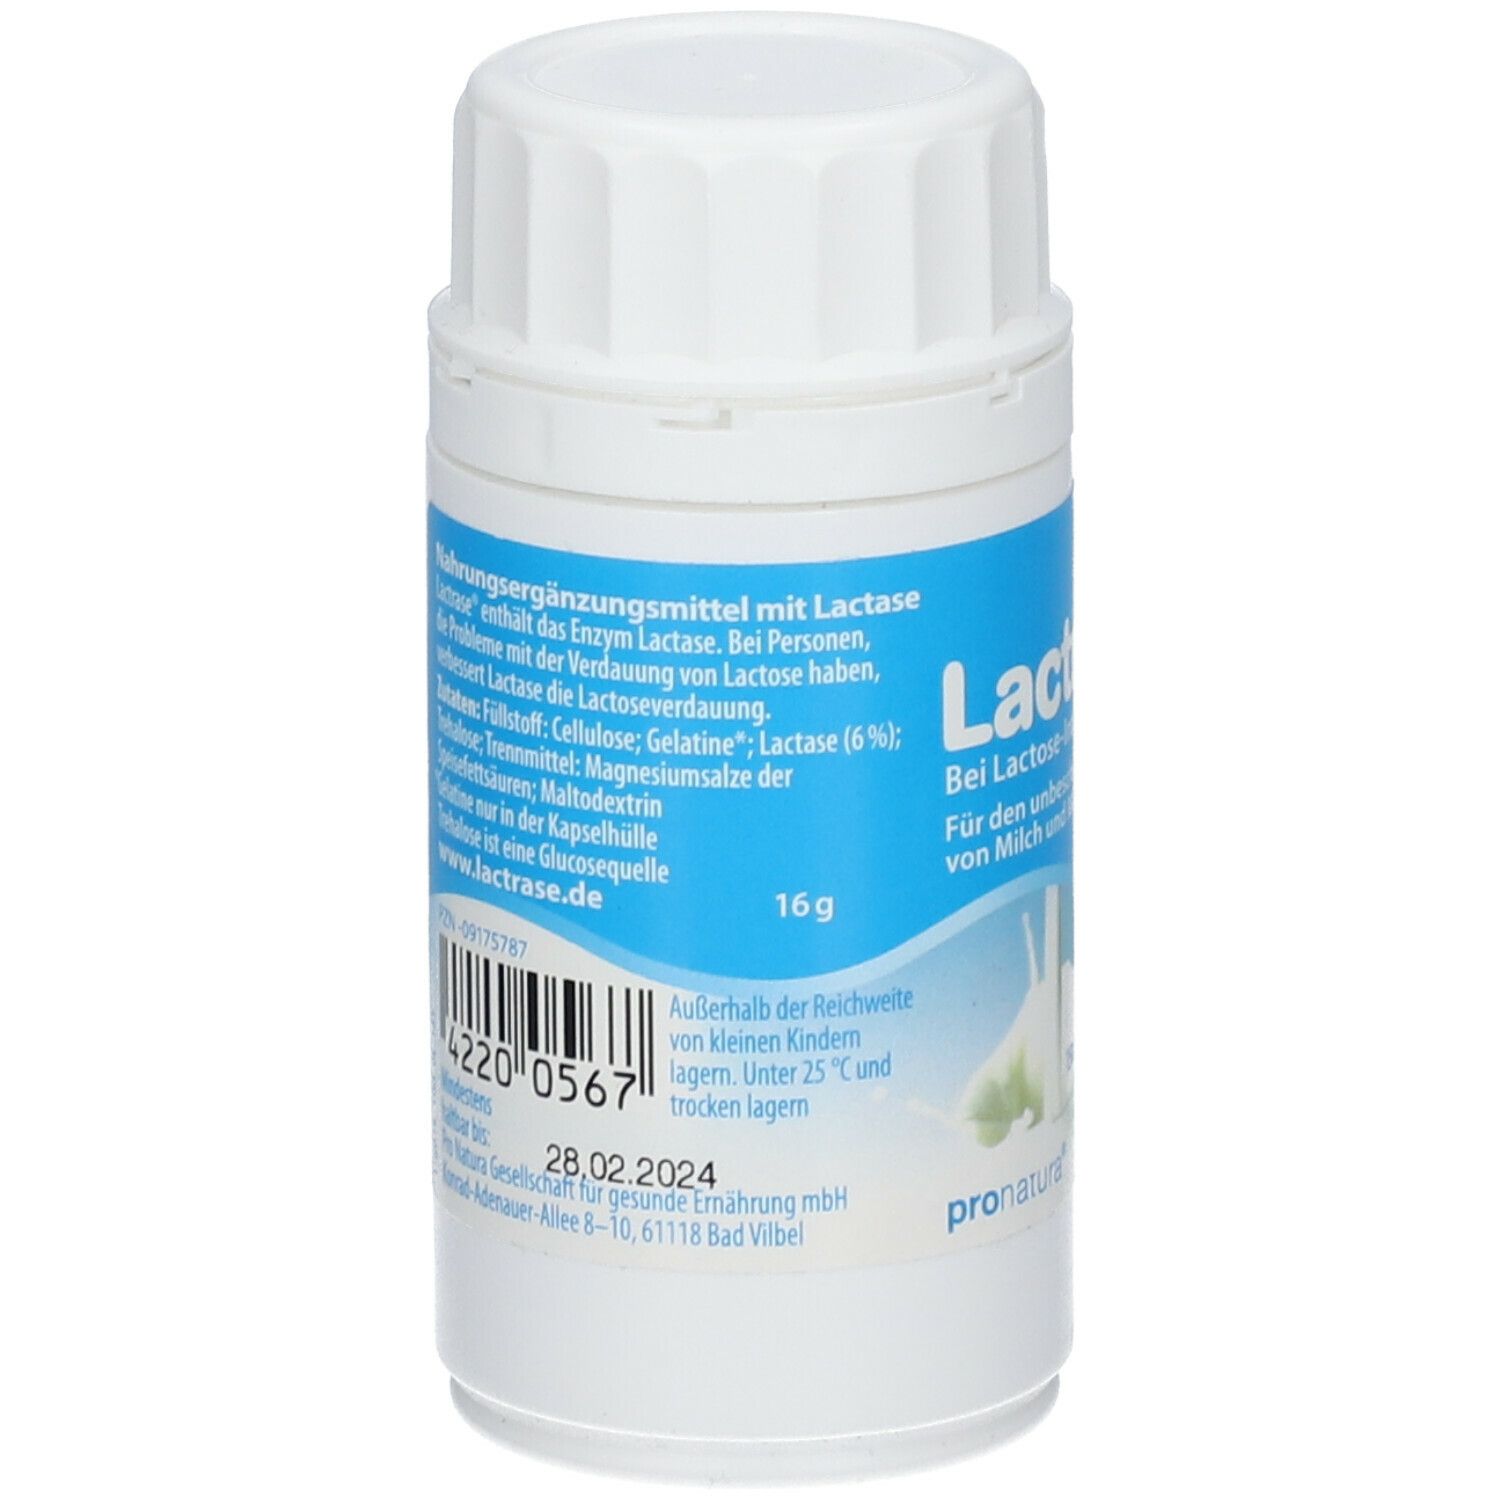 Lactrase® 1500 FCC Kapseln